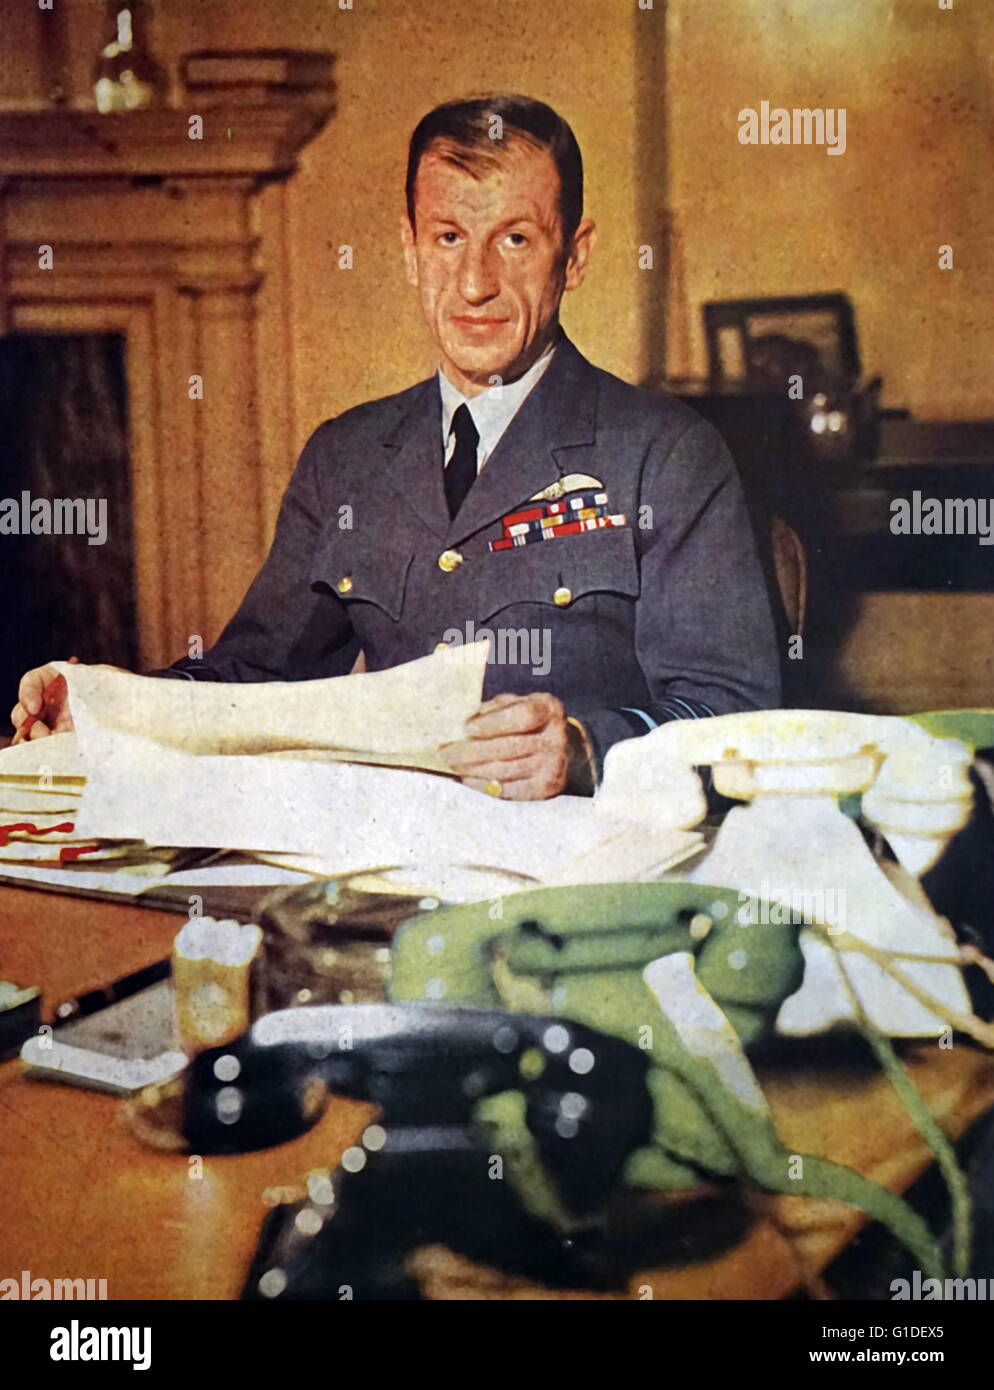 Farbe fotografisches Porträt von Sir Charles Portral (1893-1971) ein hoher Offizier der Royal Air Force. Datiert 1940 Stockfoto